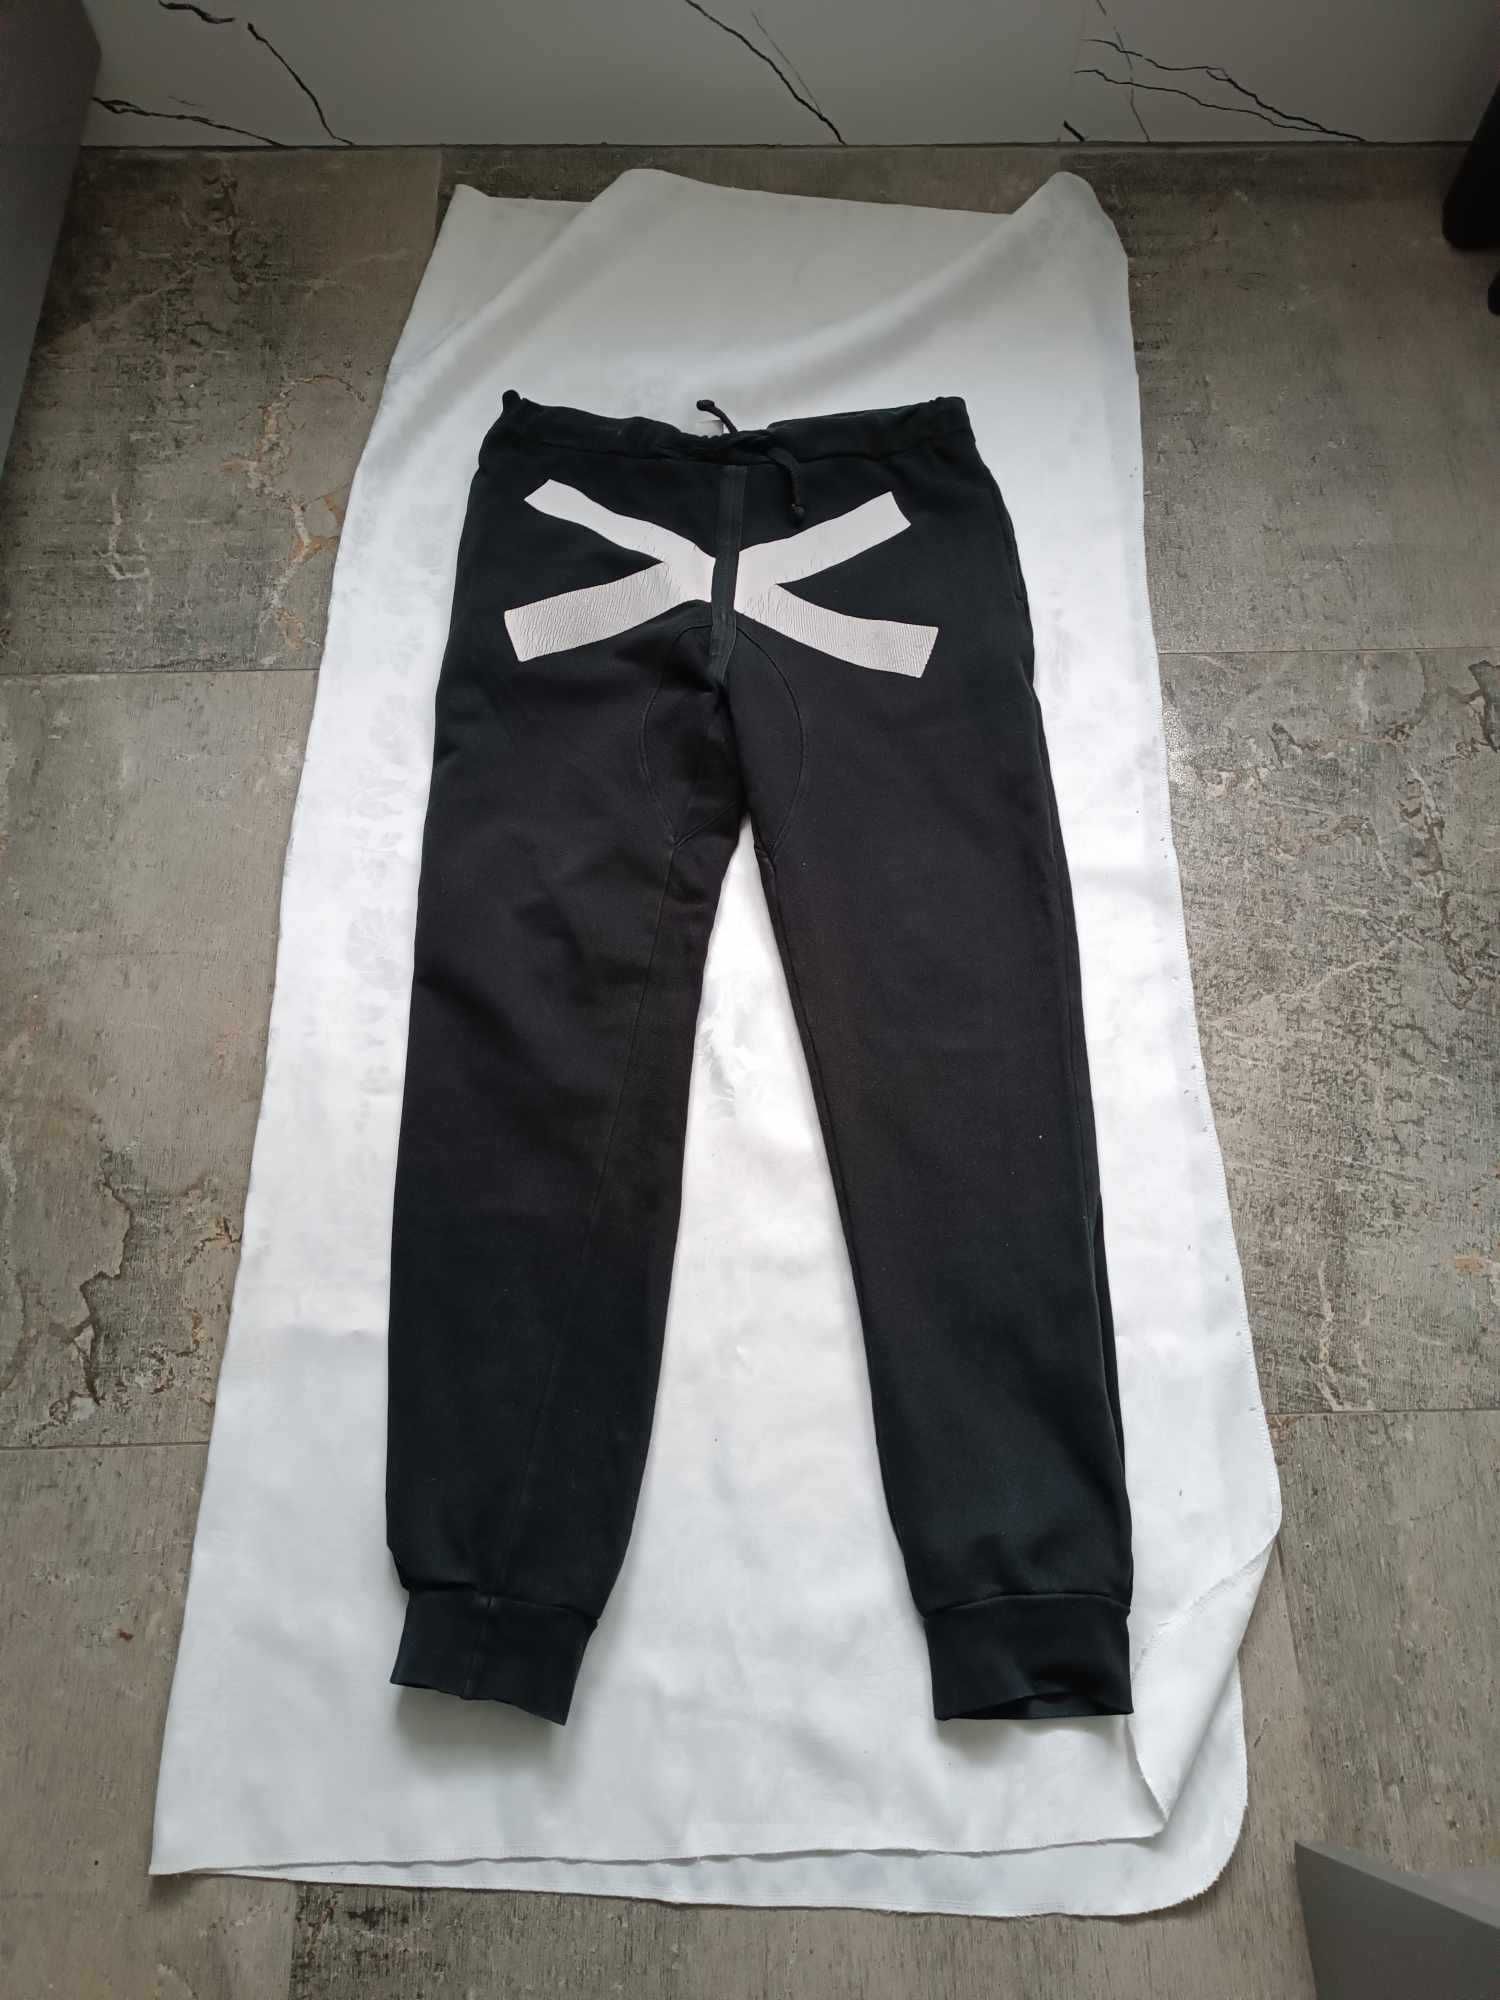 Spodnie dresowe młodzieżowe bawełniane czarne białe X, - 176 cm, S- L.